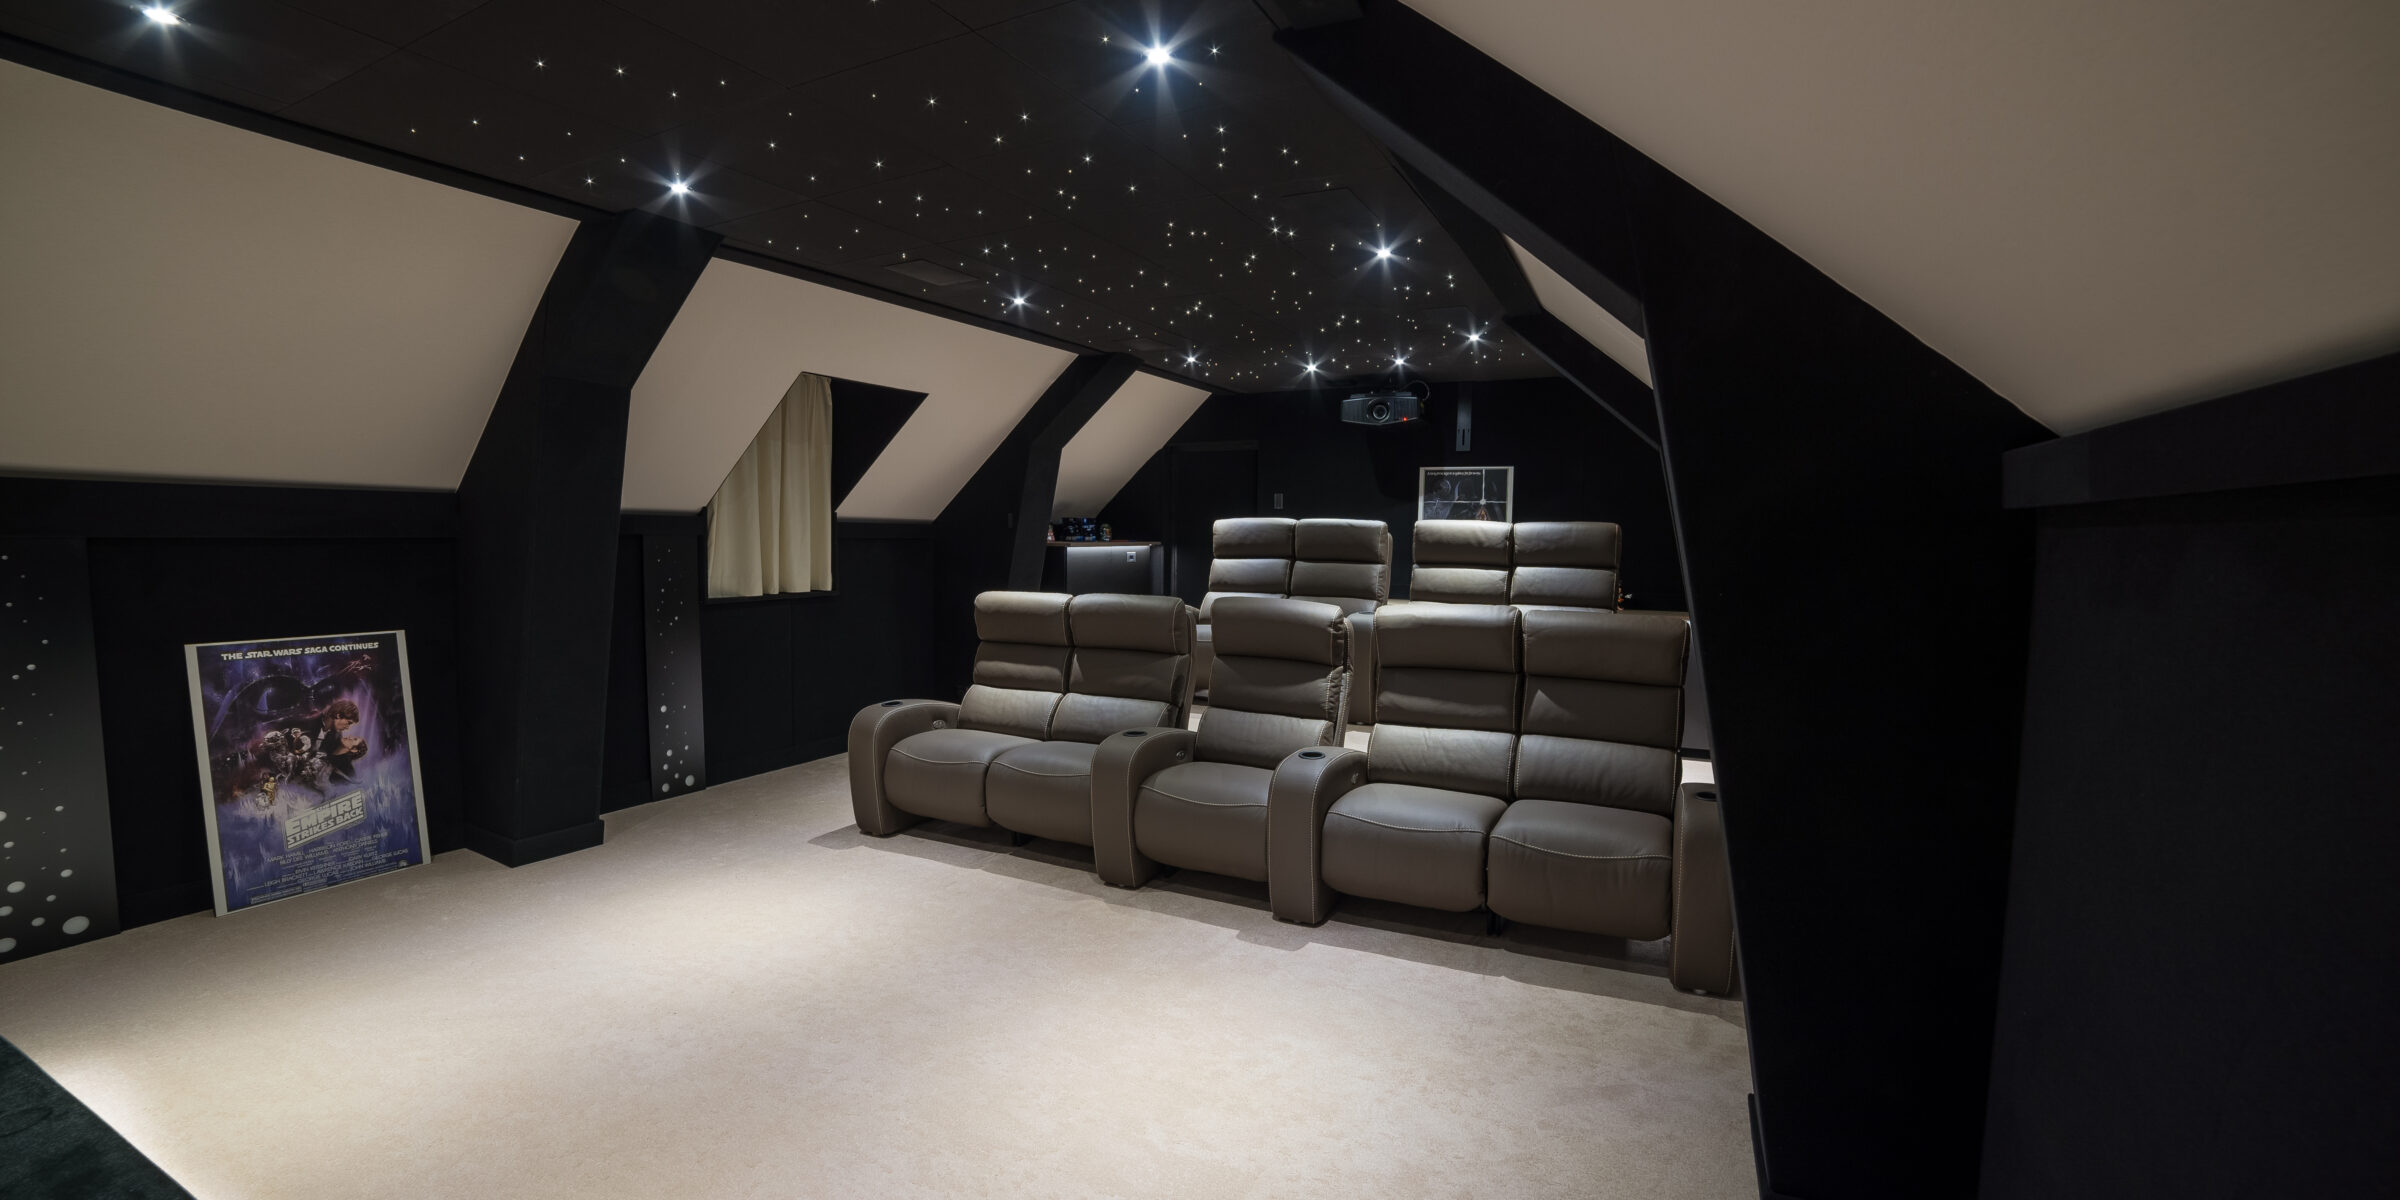 Salle de cinema privée 45m2 grise avec 9 places et un plafond étoilé à MelunOcinema est créateur de salles de cinéma privées depuis plus de 20 ans.